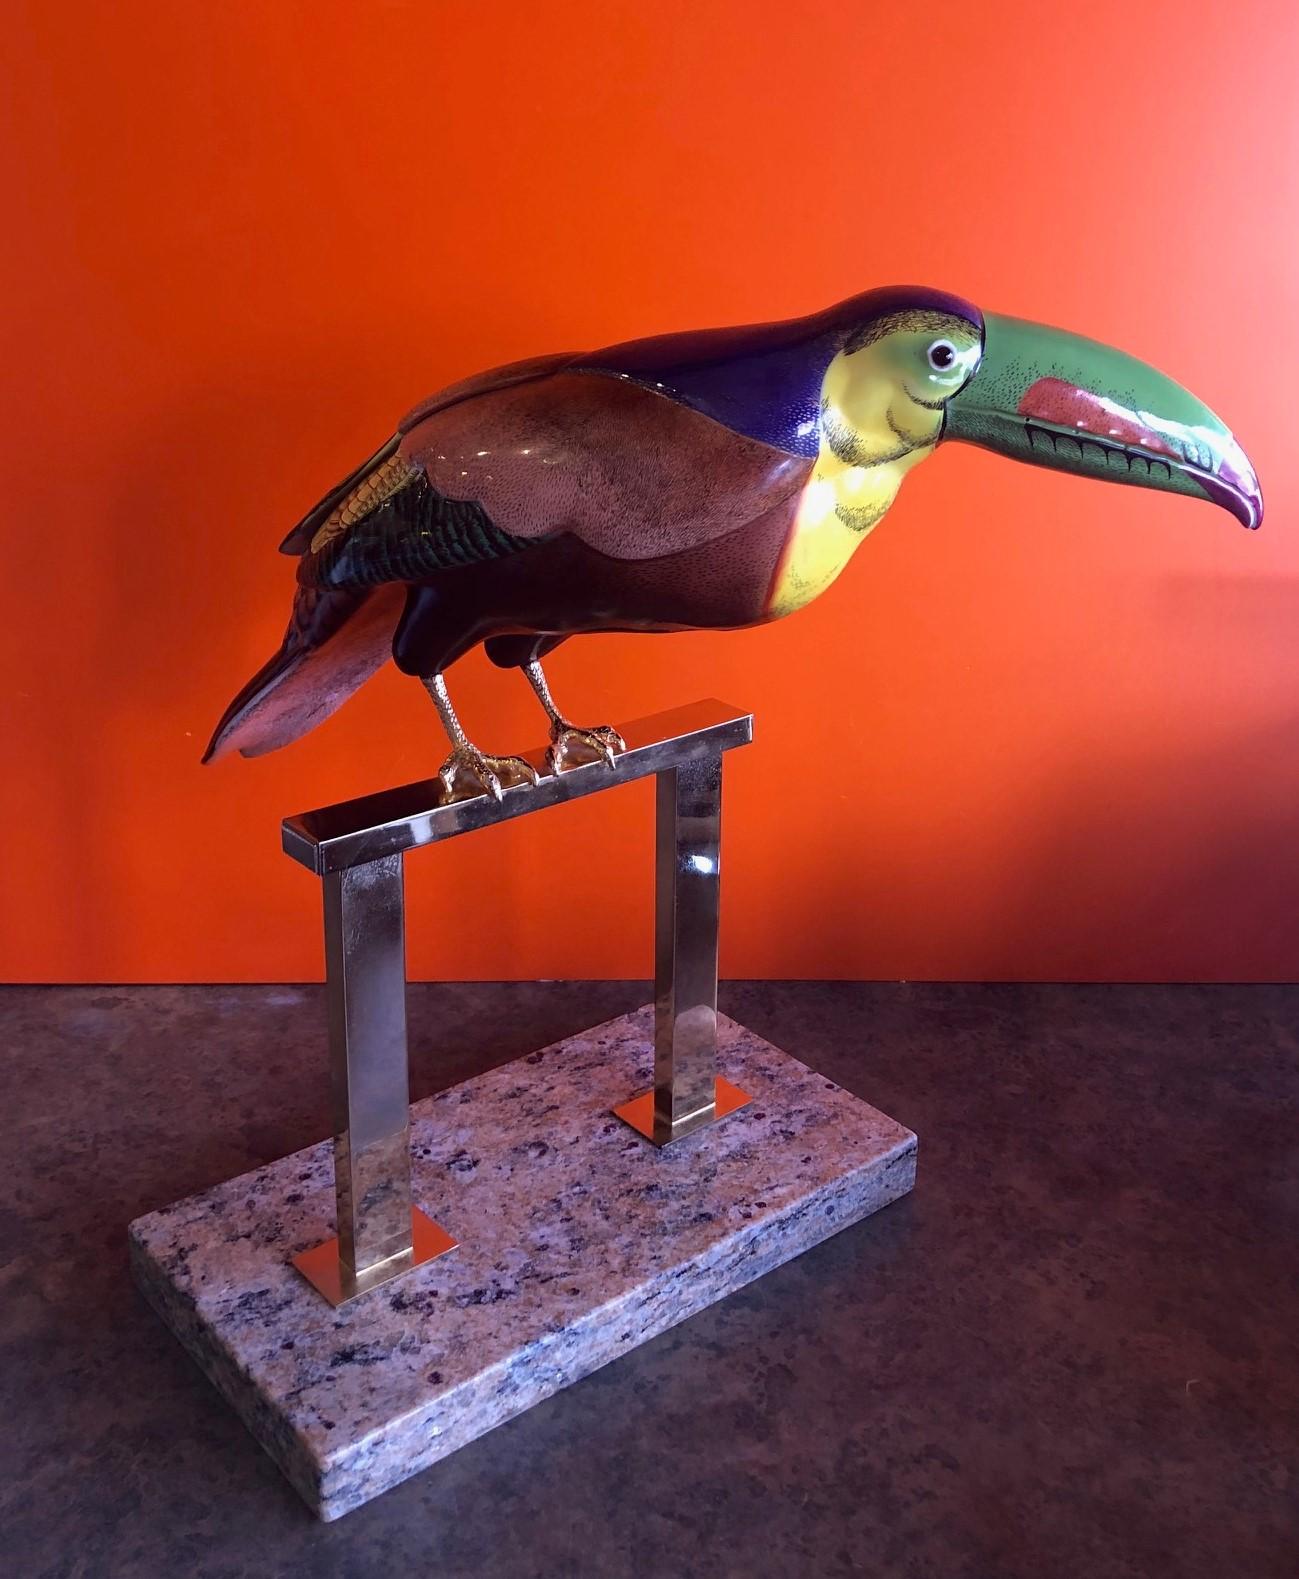 Exceptionnelle sculpture de toucan stylisé en porcelaine peinte à la main, conçue par Giulia Mangani pour Oggetti, vers les années 1970. La pièce est multicolore, avec un fond violet riche et profond et une attention étonnante aux détails. Les pieds